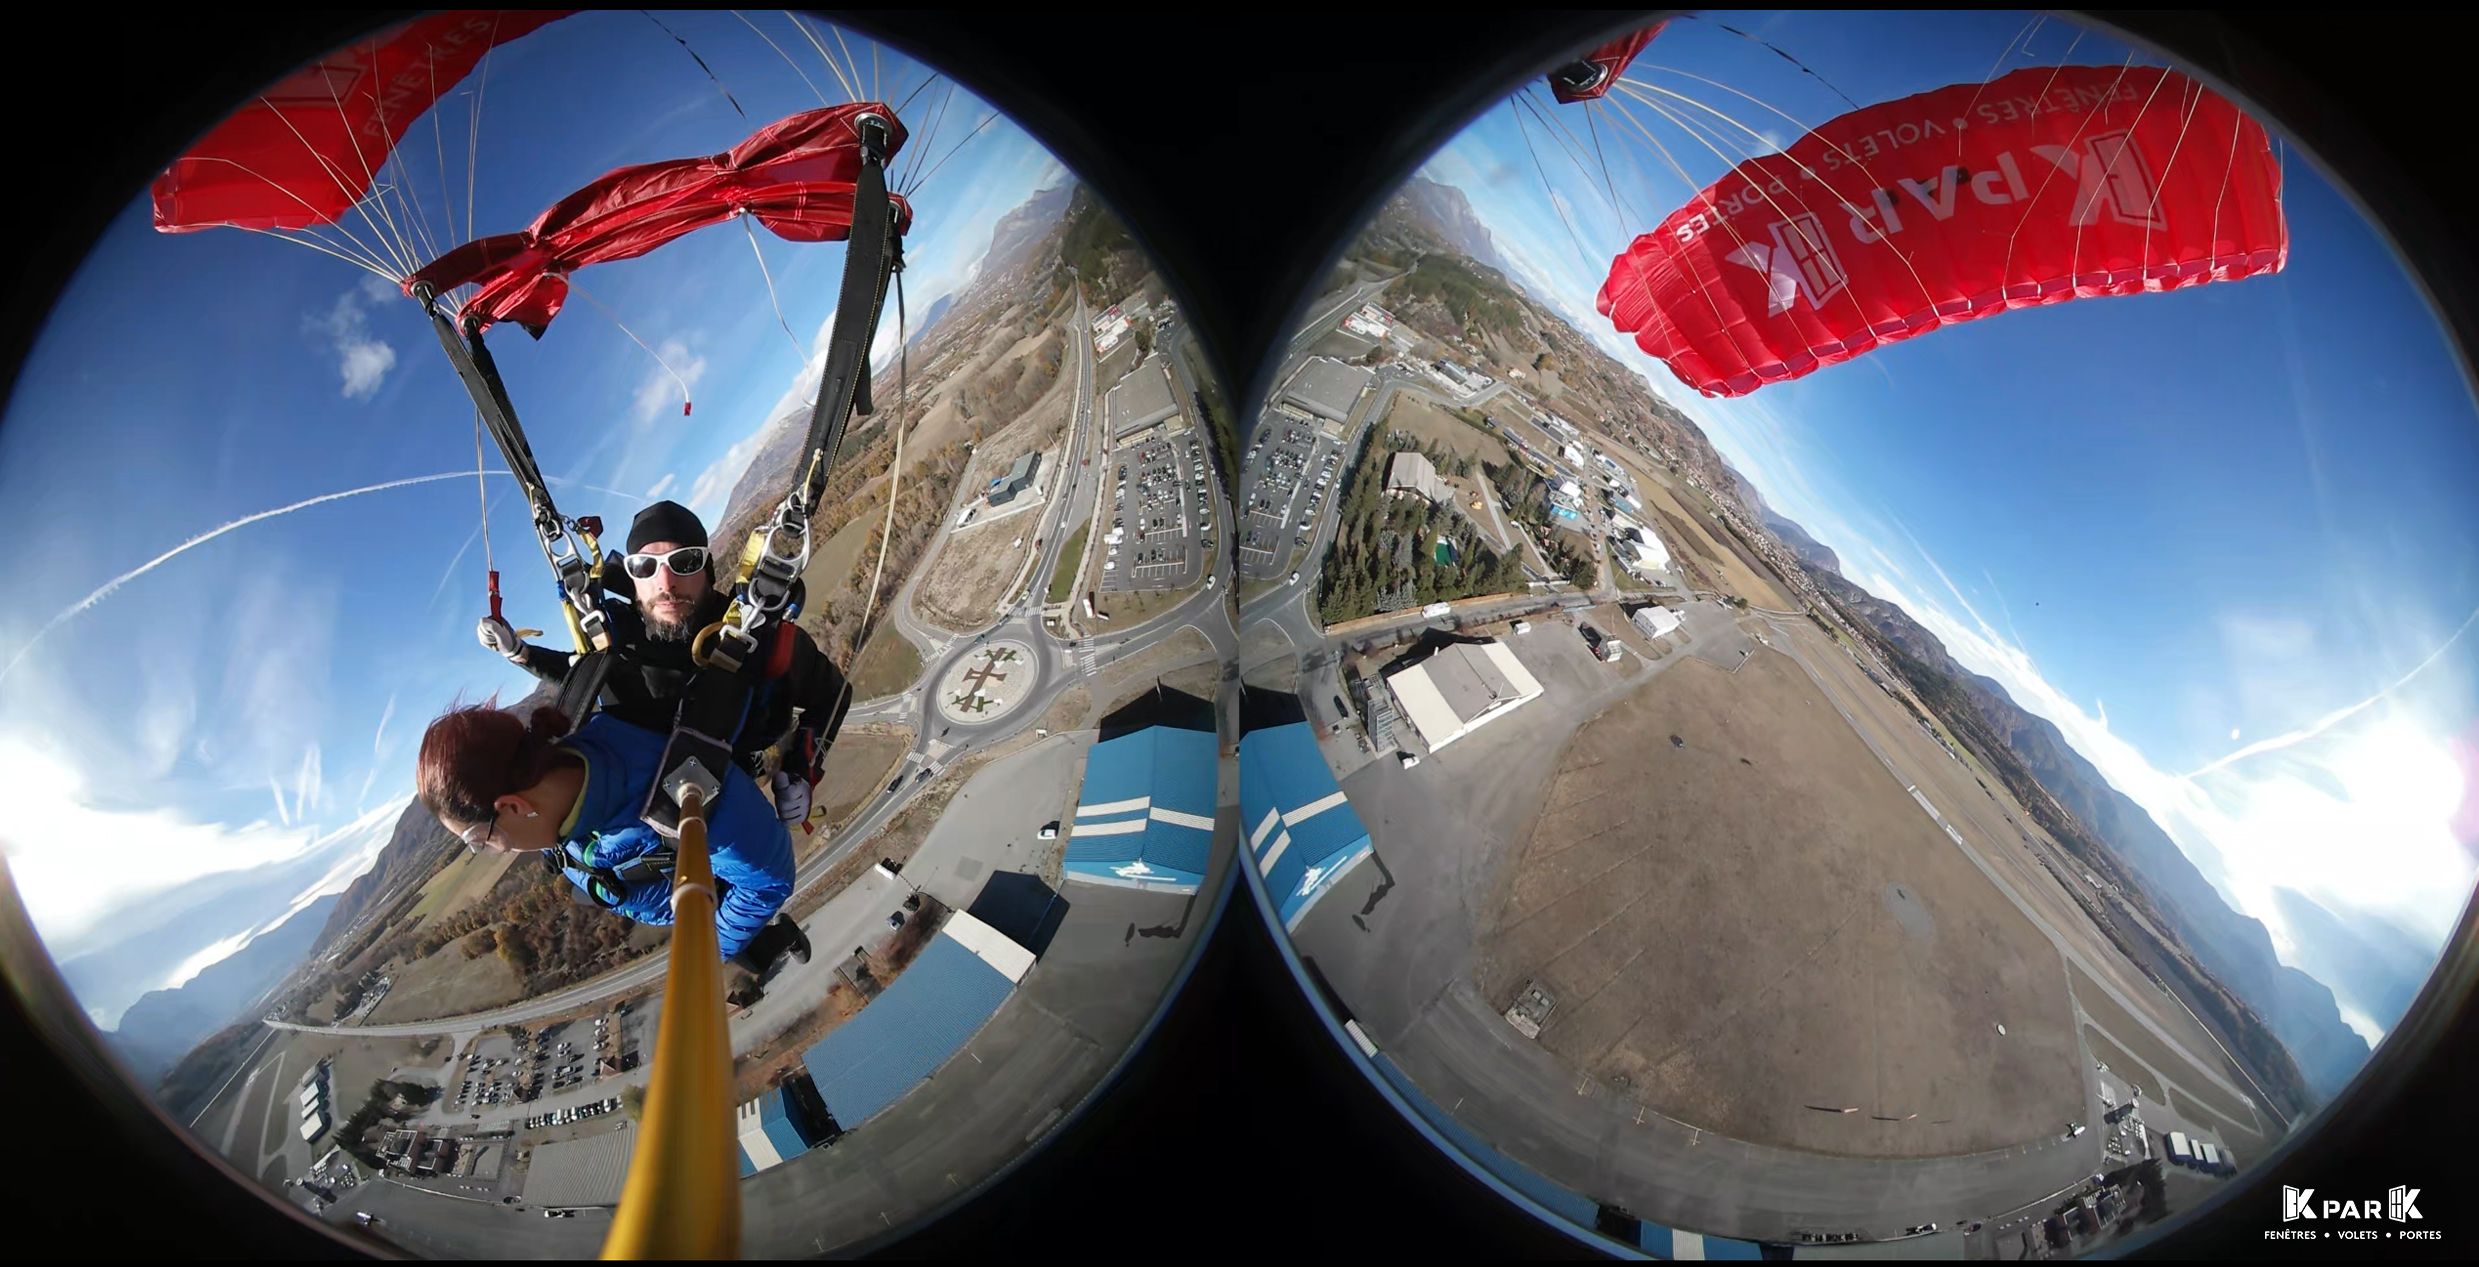 Saut en parachute avec KparK et Gap Tallard Fly Dream